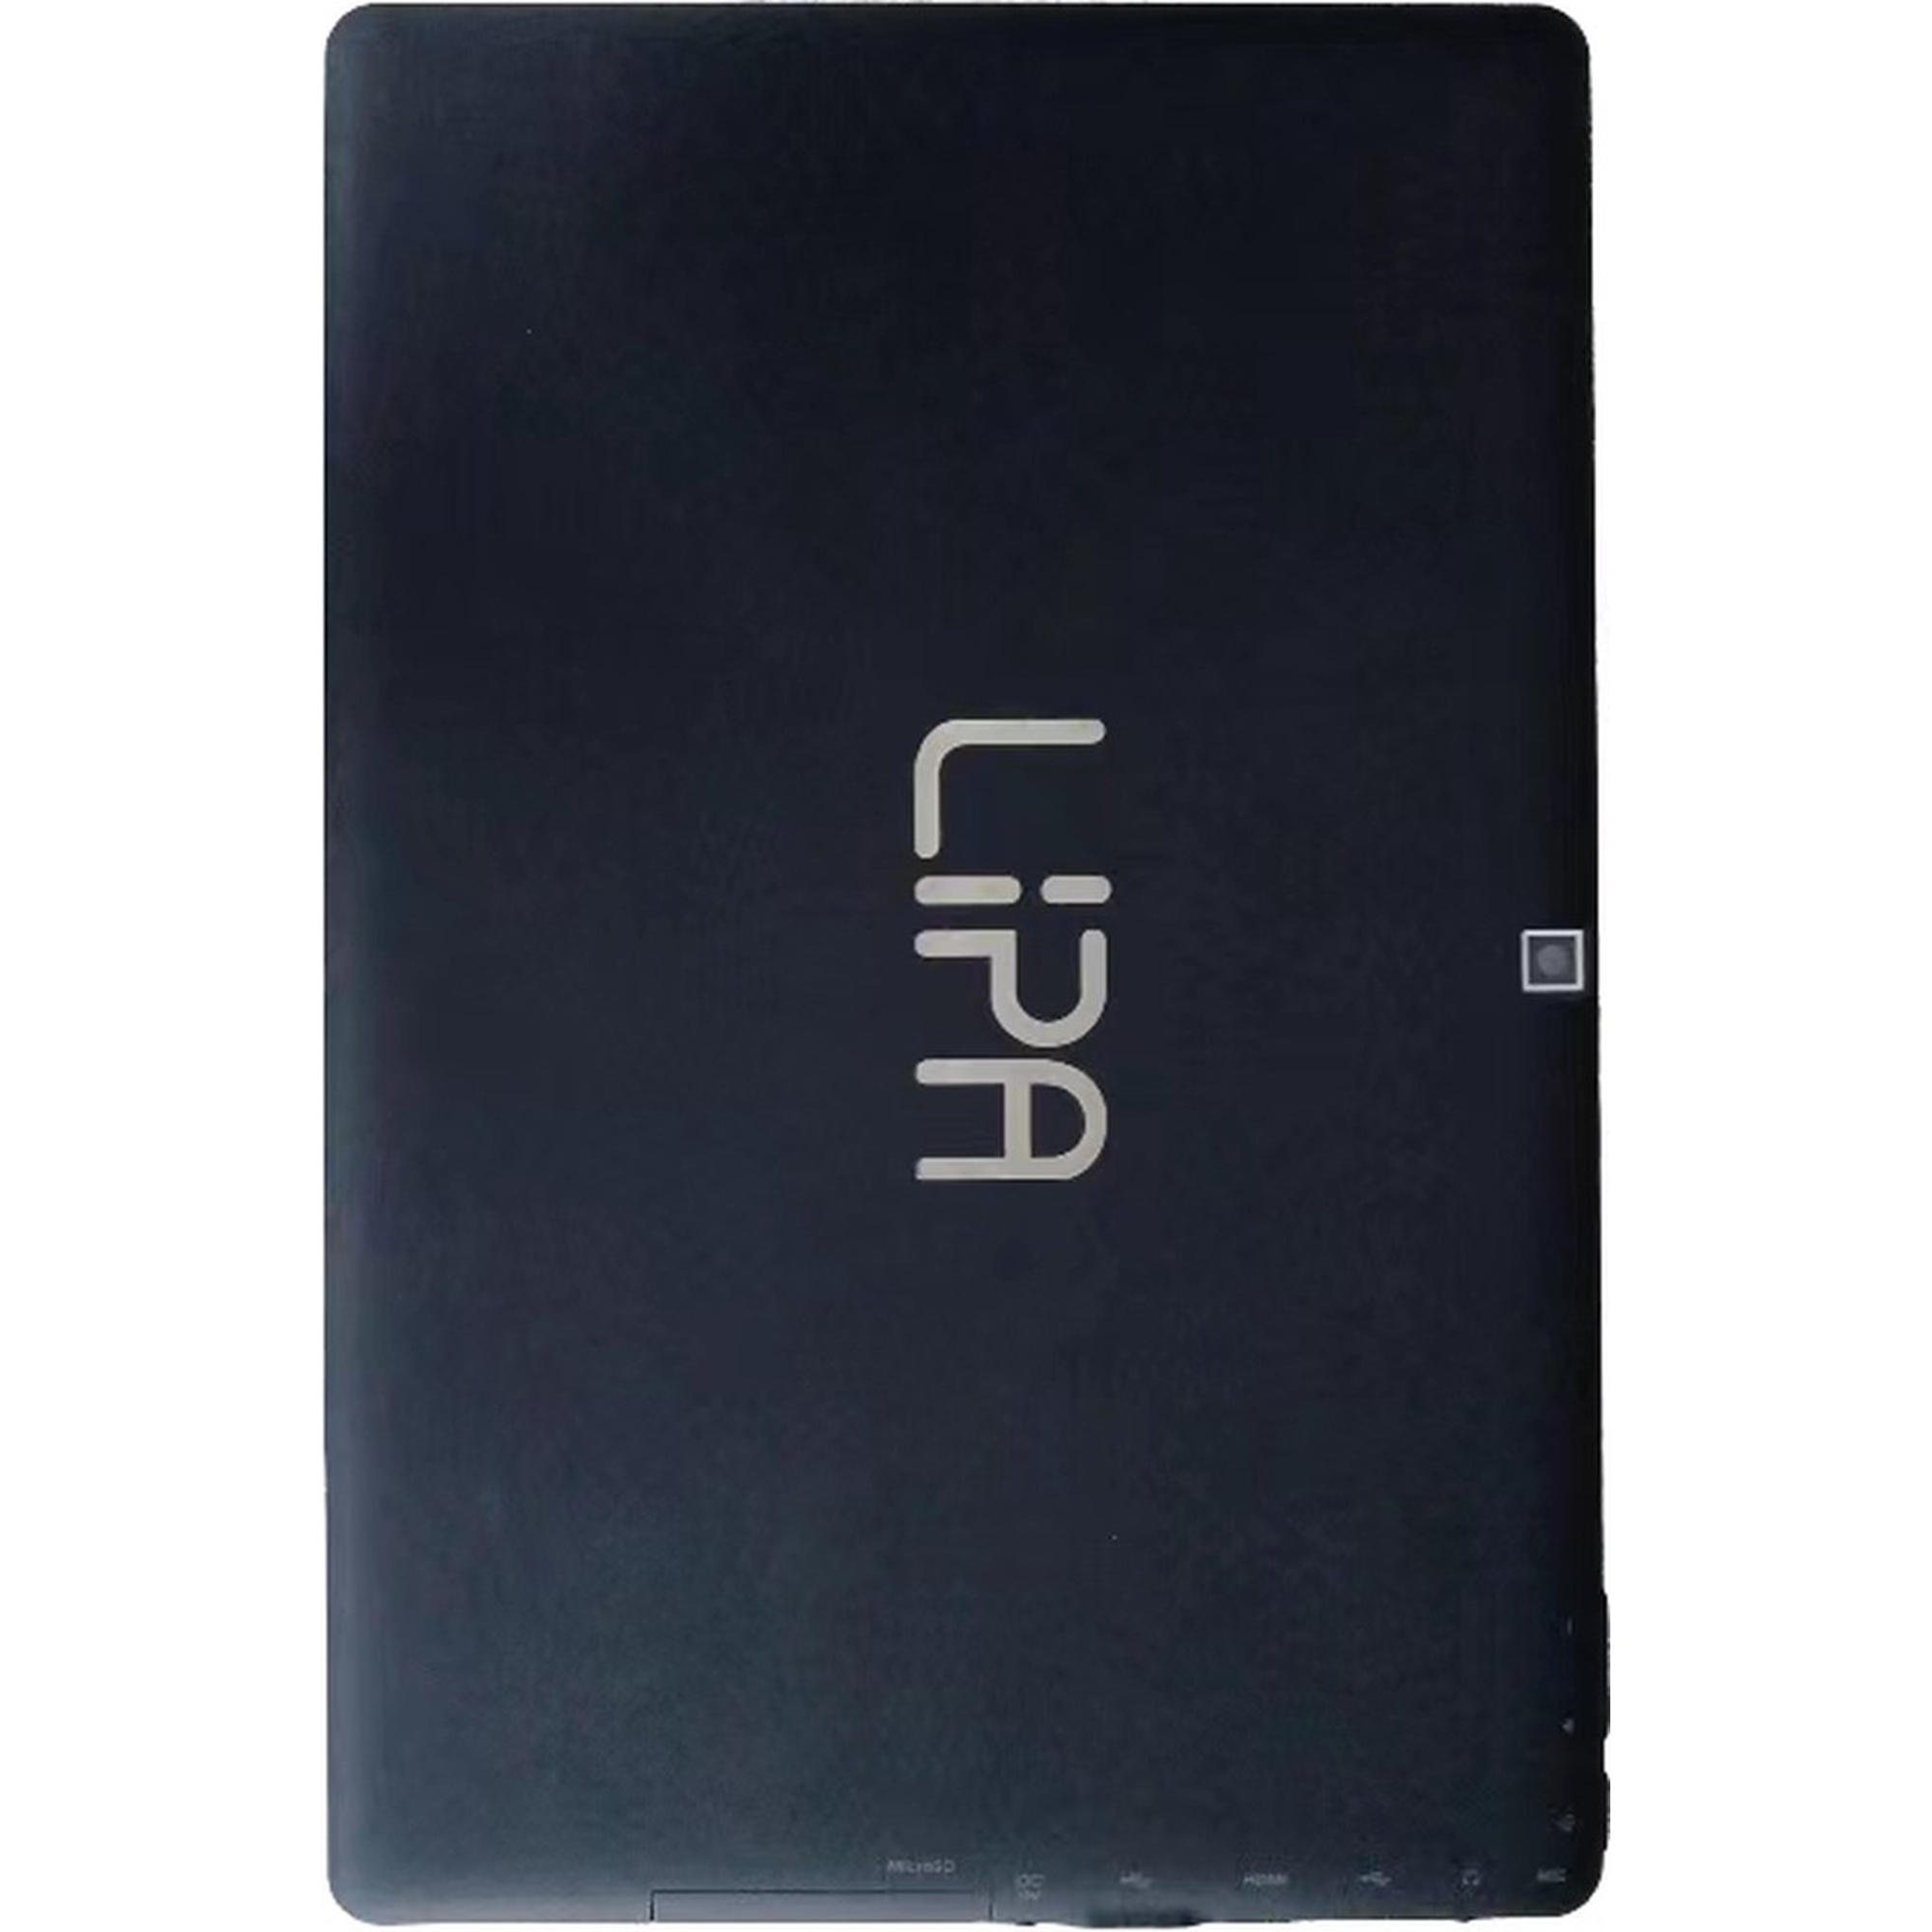 GB, mit 64 tablet Windows LIPA 11 tablet, Zoll, Black 10,1 KP-01 Windows Keyboard,